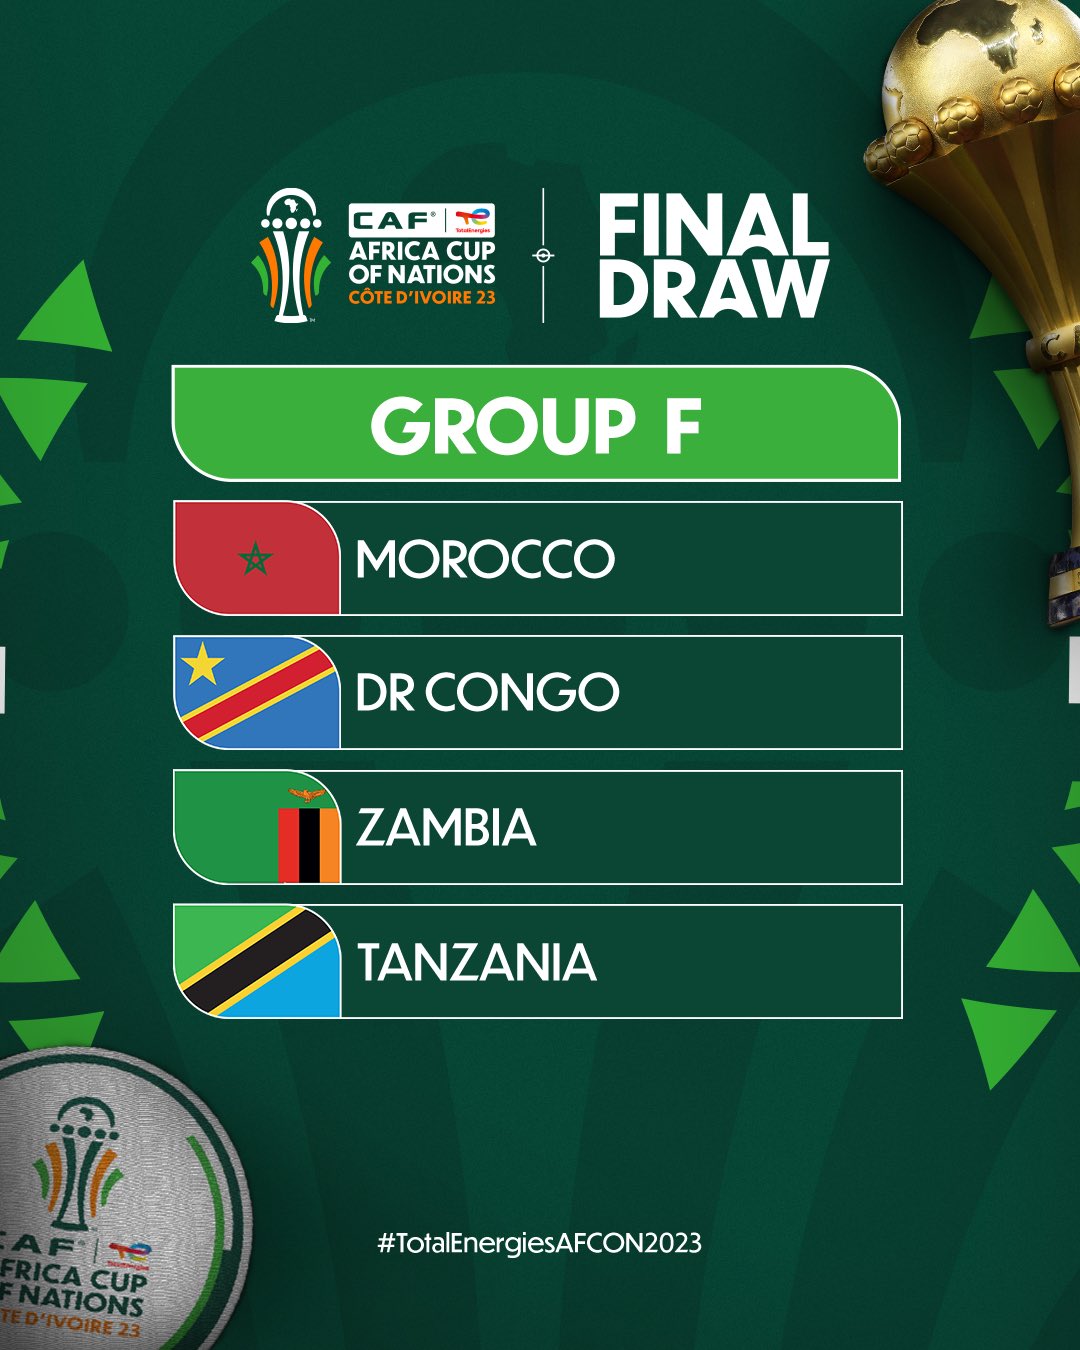 المغرب في كأس الأمم الأفريقية قرعة كأس إفريقيا للأمم 2023: المنتخب المغربي في المجموعة السادسة إلى جانب منتخبات تنزانيا وزامبيا والكونغو الديمقراطية